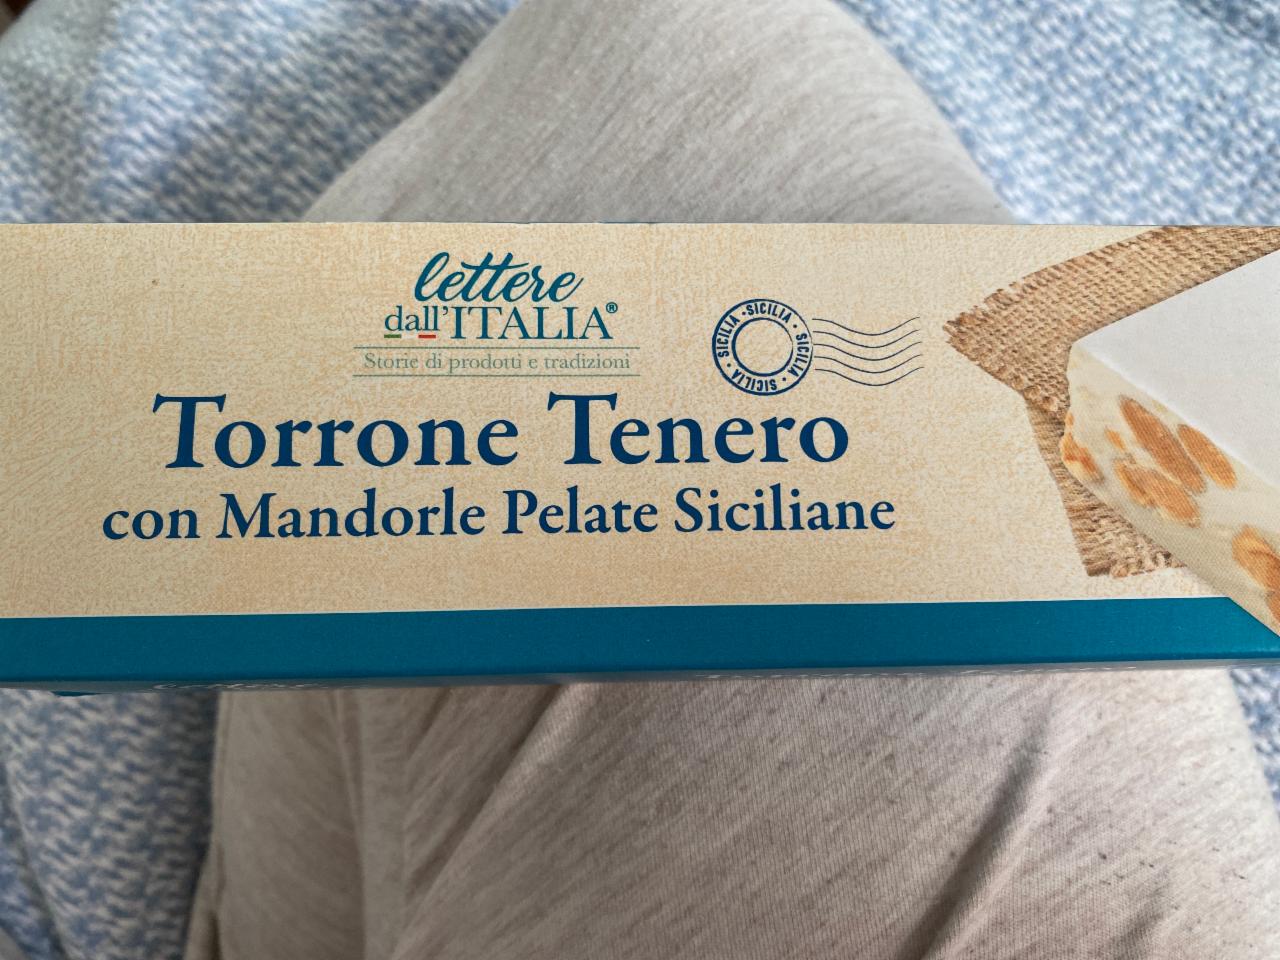 Фото - десерт Torrone Tenero Lettere dall'ITALIA